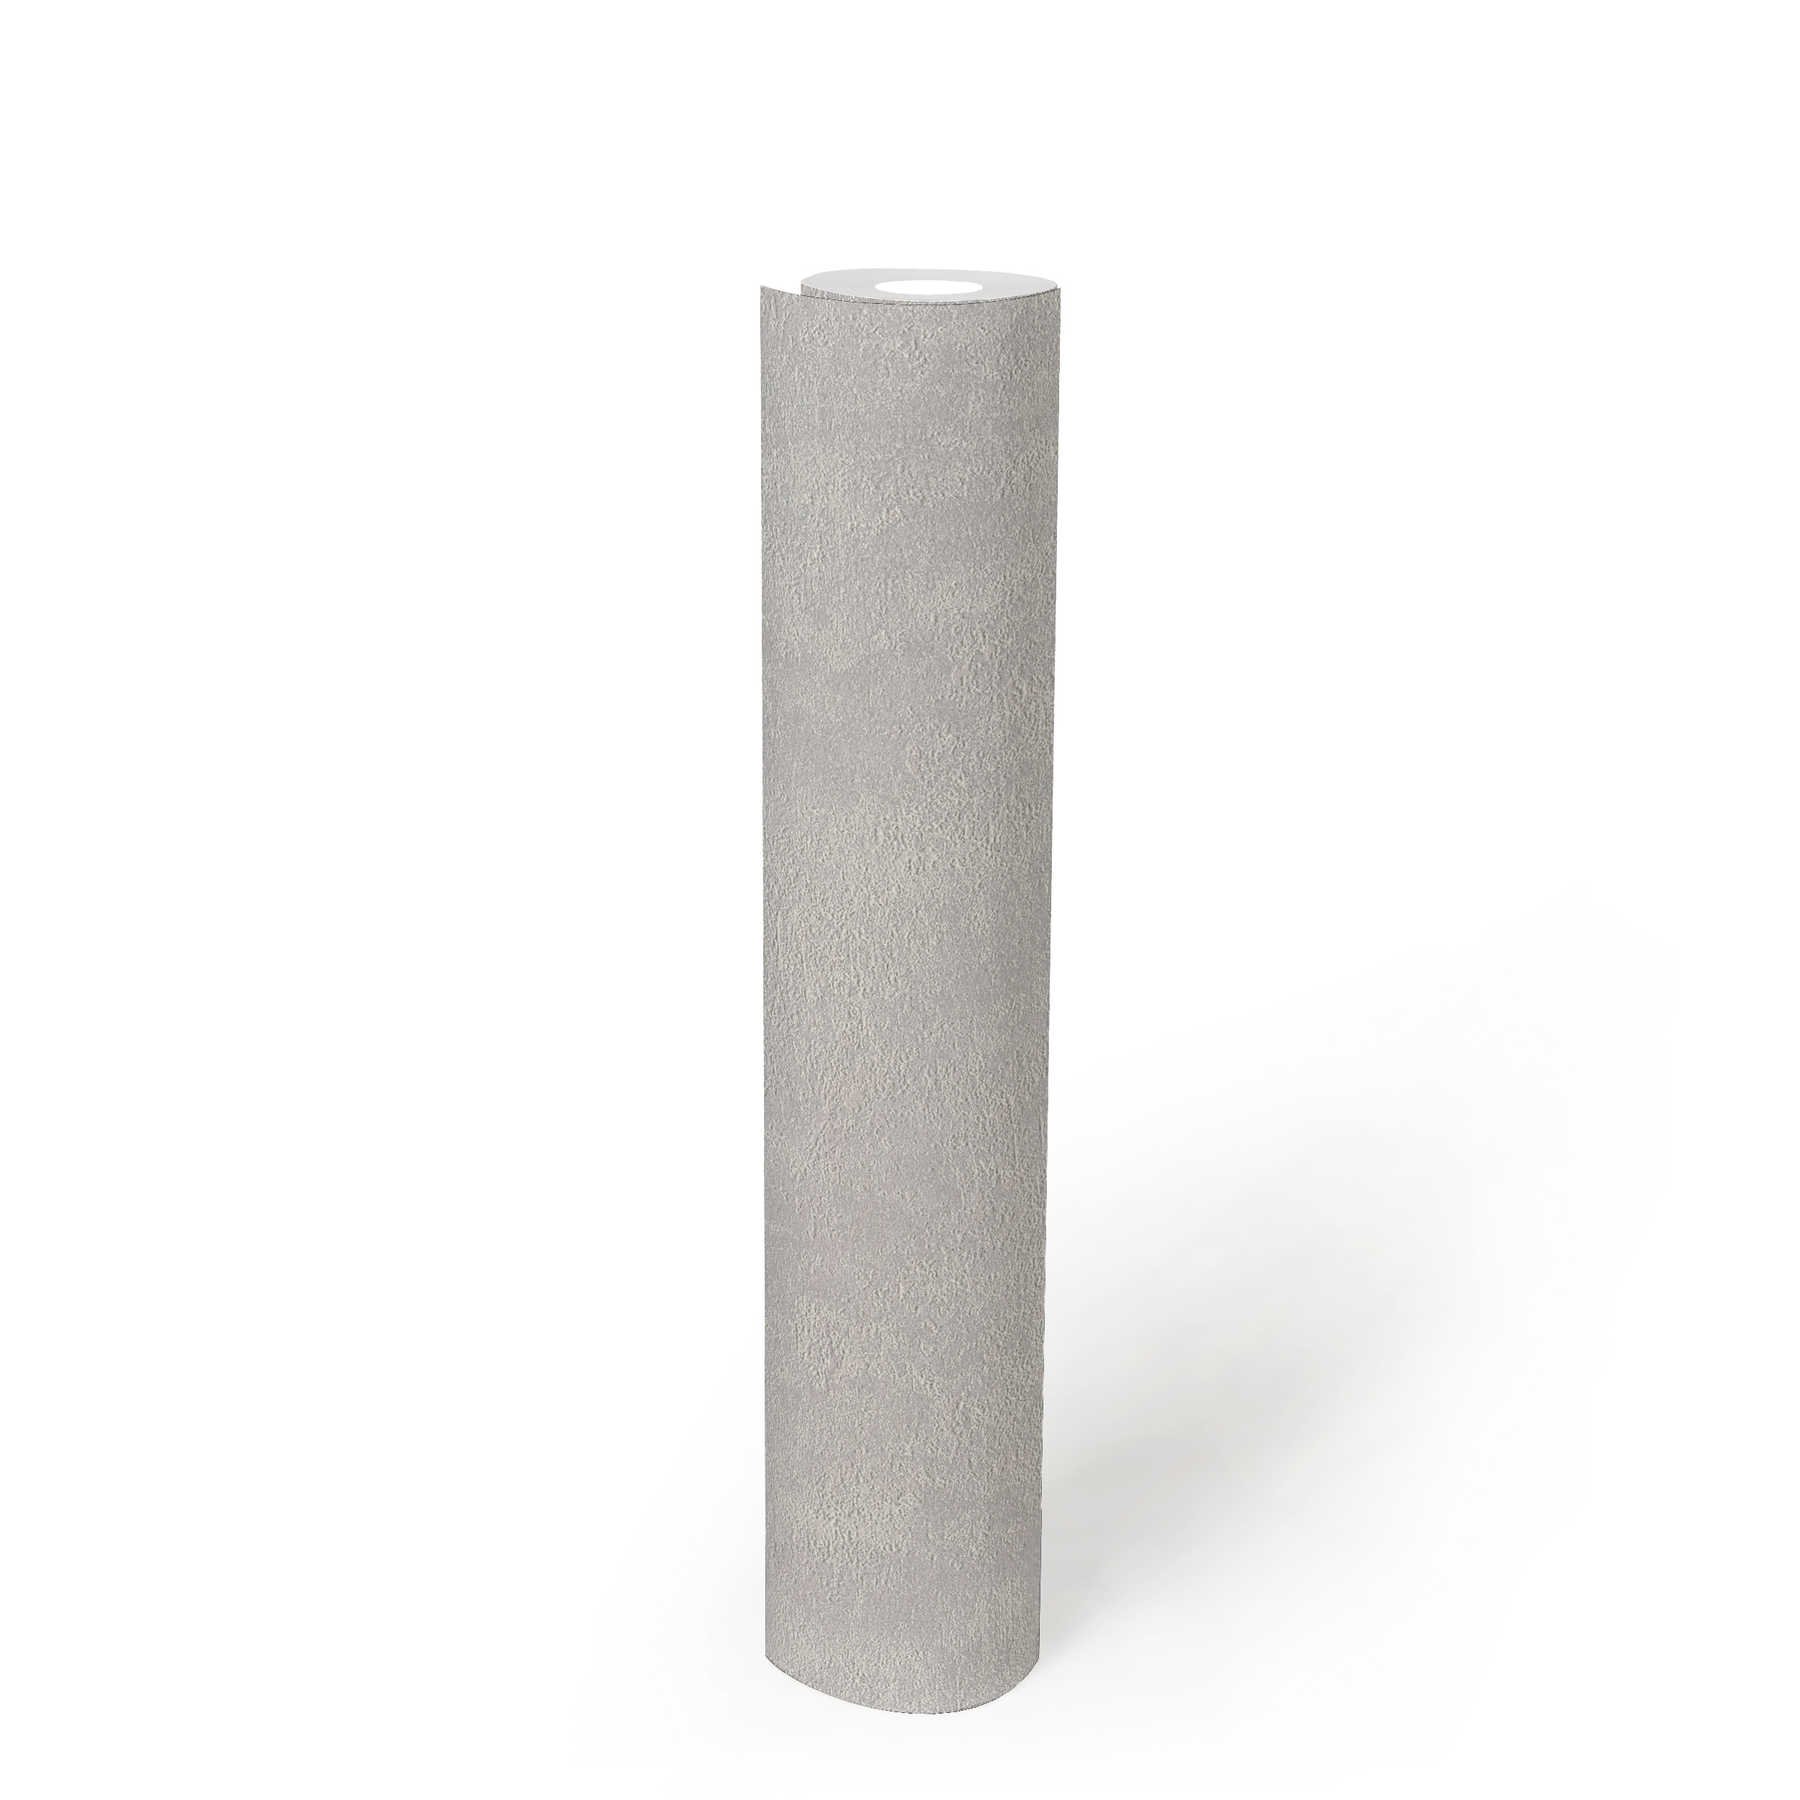             Papier peint plâtre structuré, uni & satiné - gris clair
        